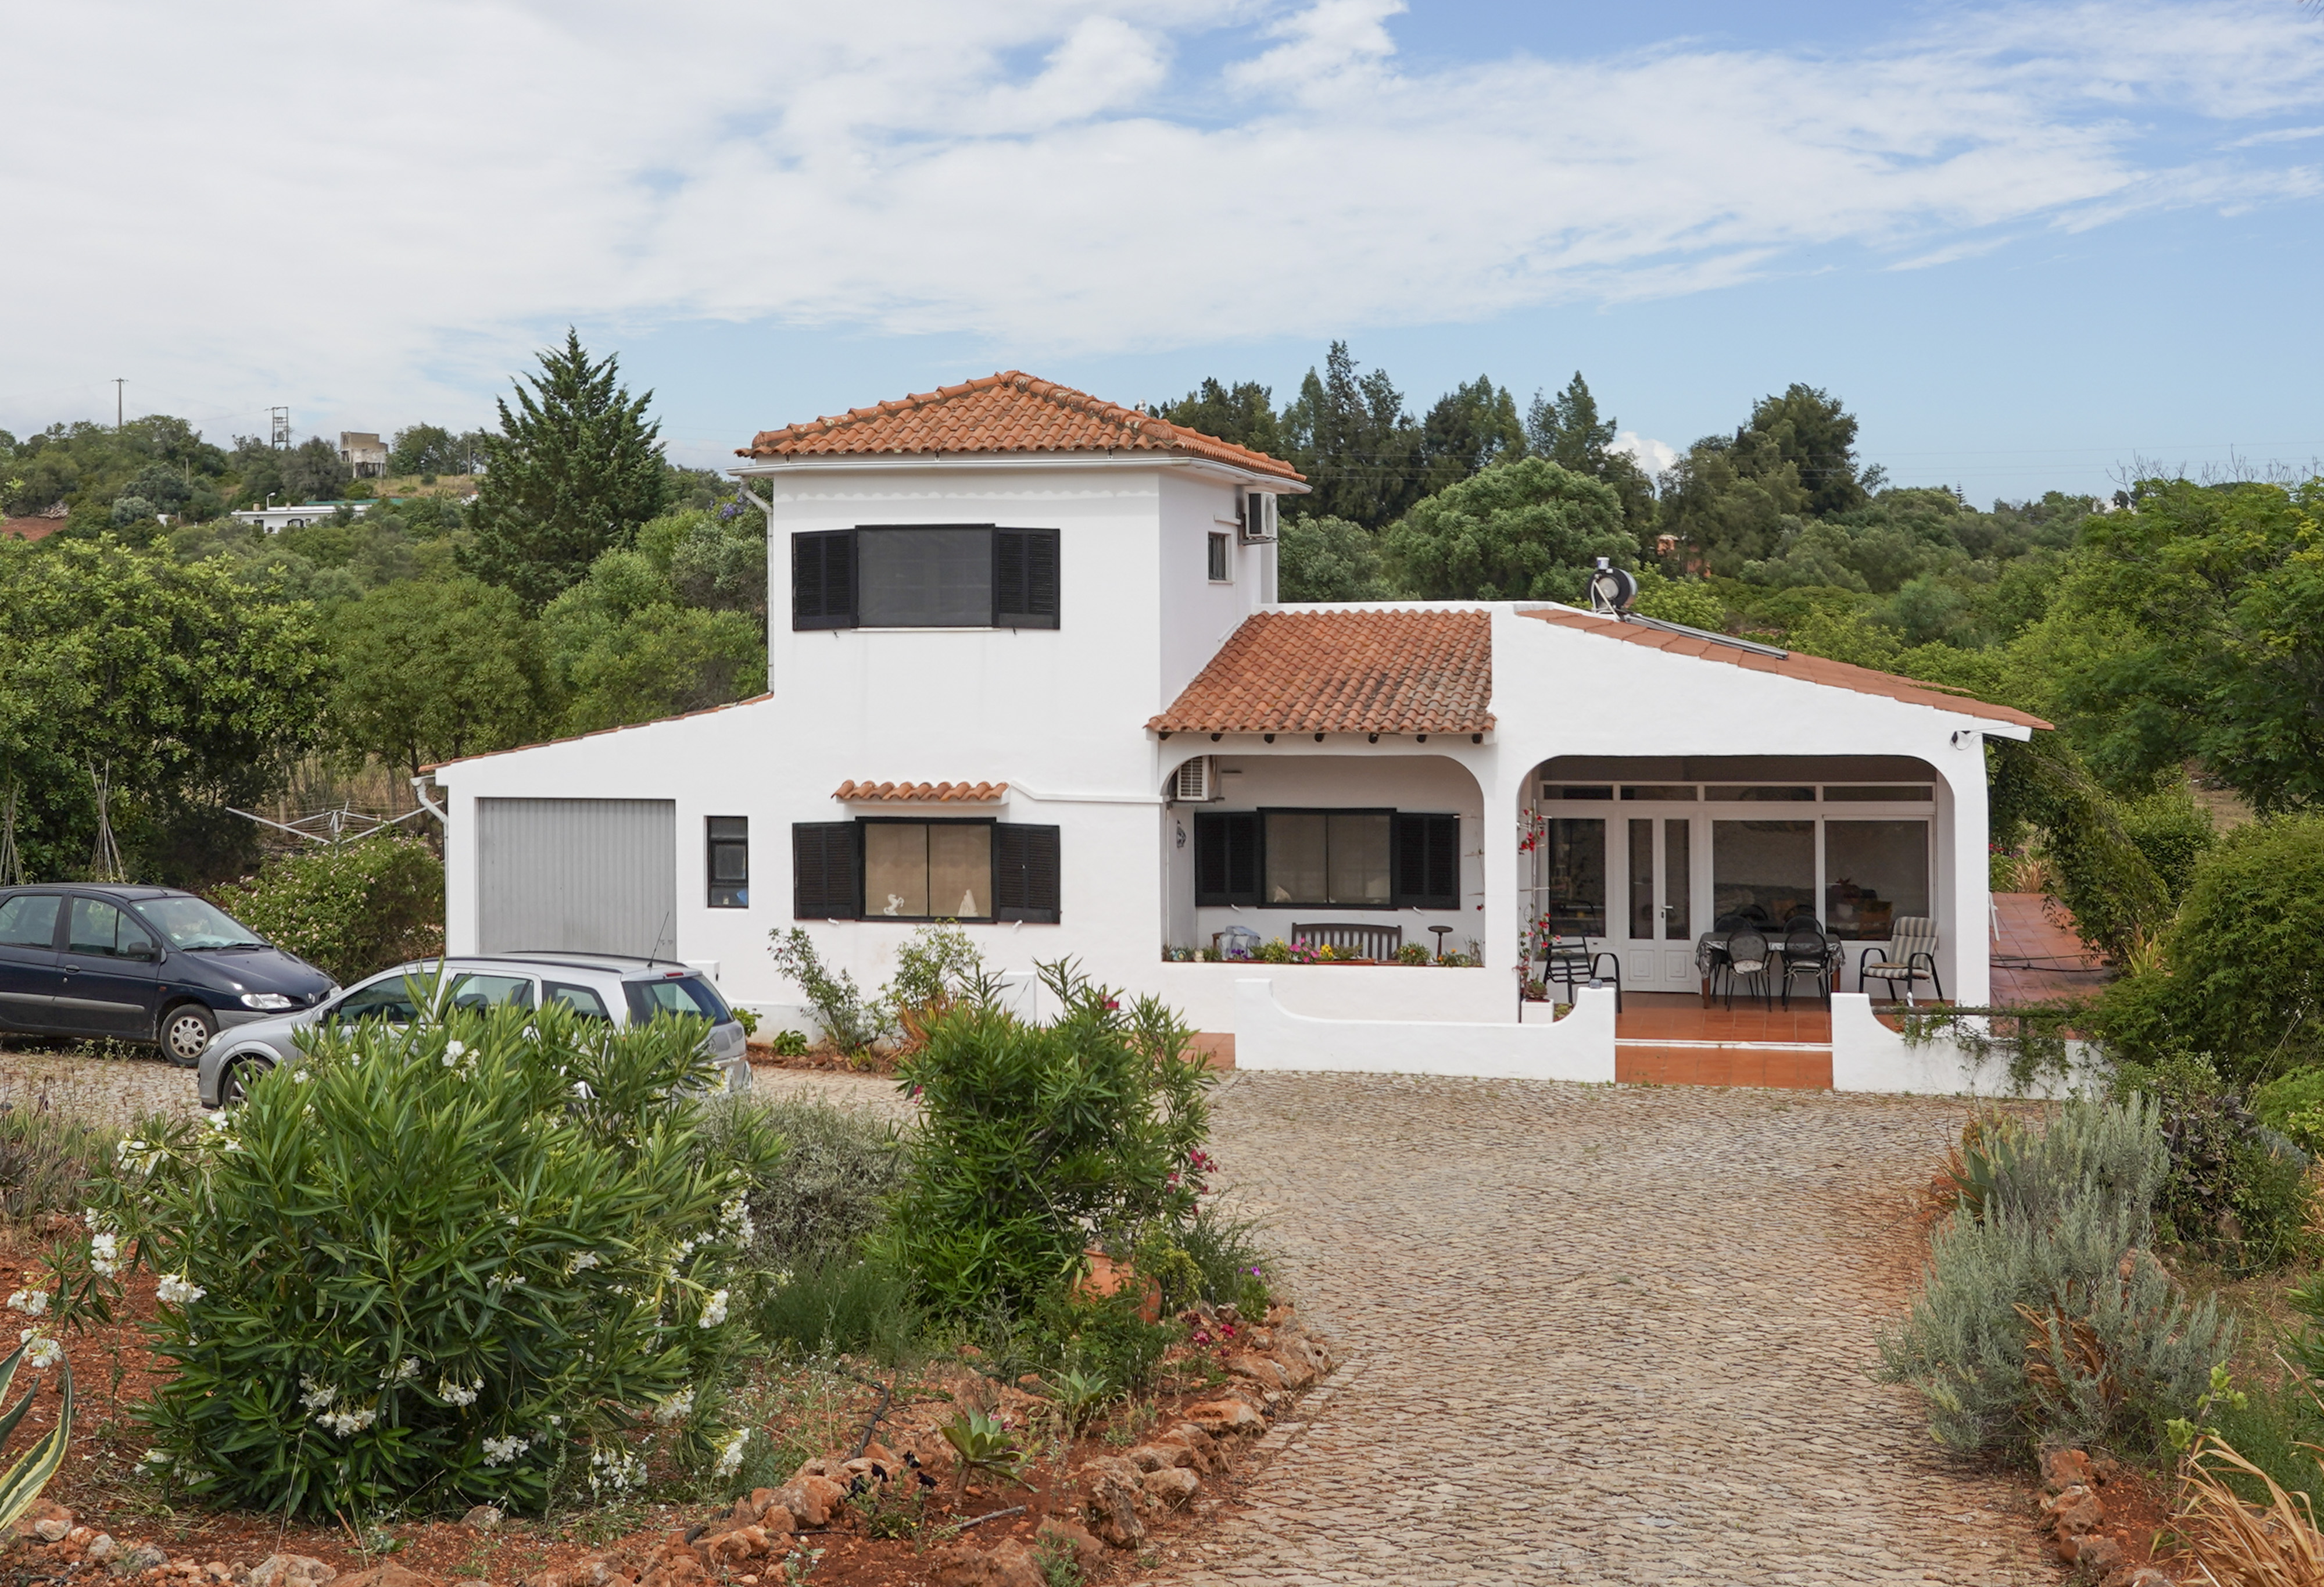 Die Polizei hat das ehemalige Haus von Christian B. im portugiesischen Dorf Foral untersucht